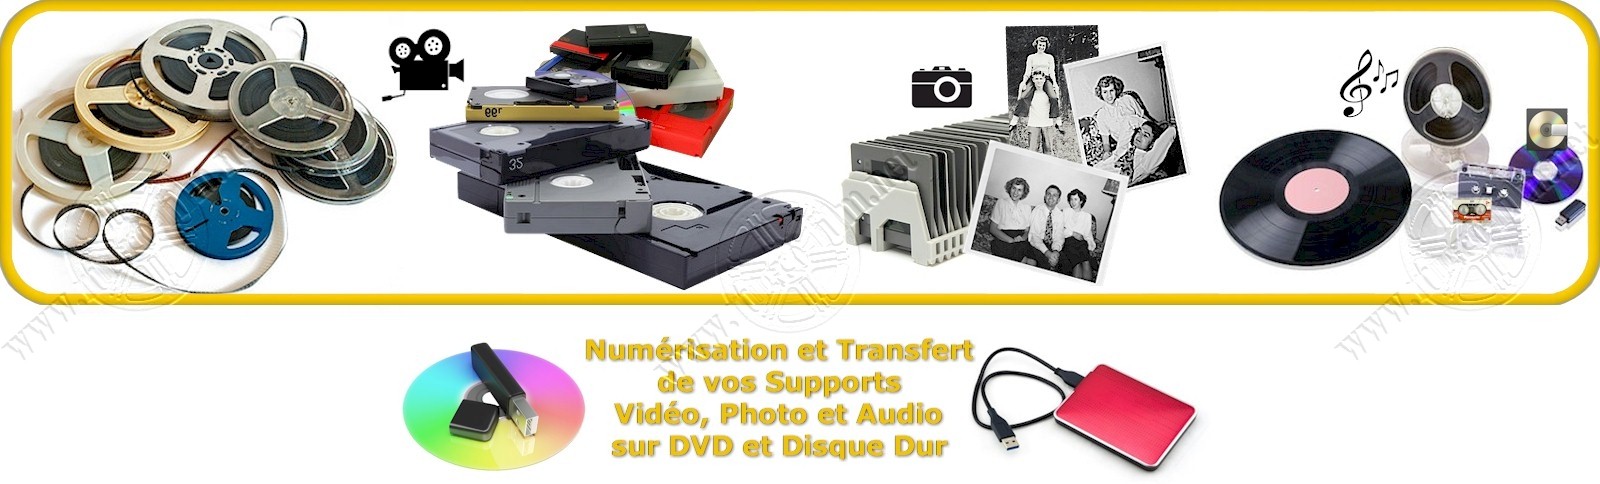 transfert de Film 8mm, Super8, cassette et Diapositive sur DVD